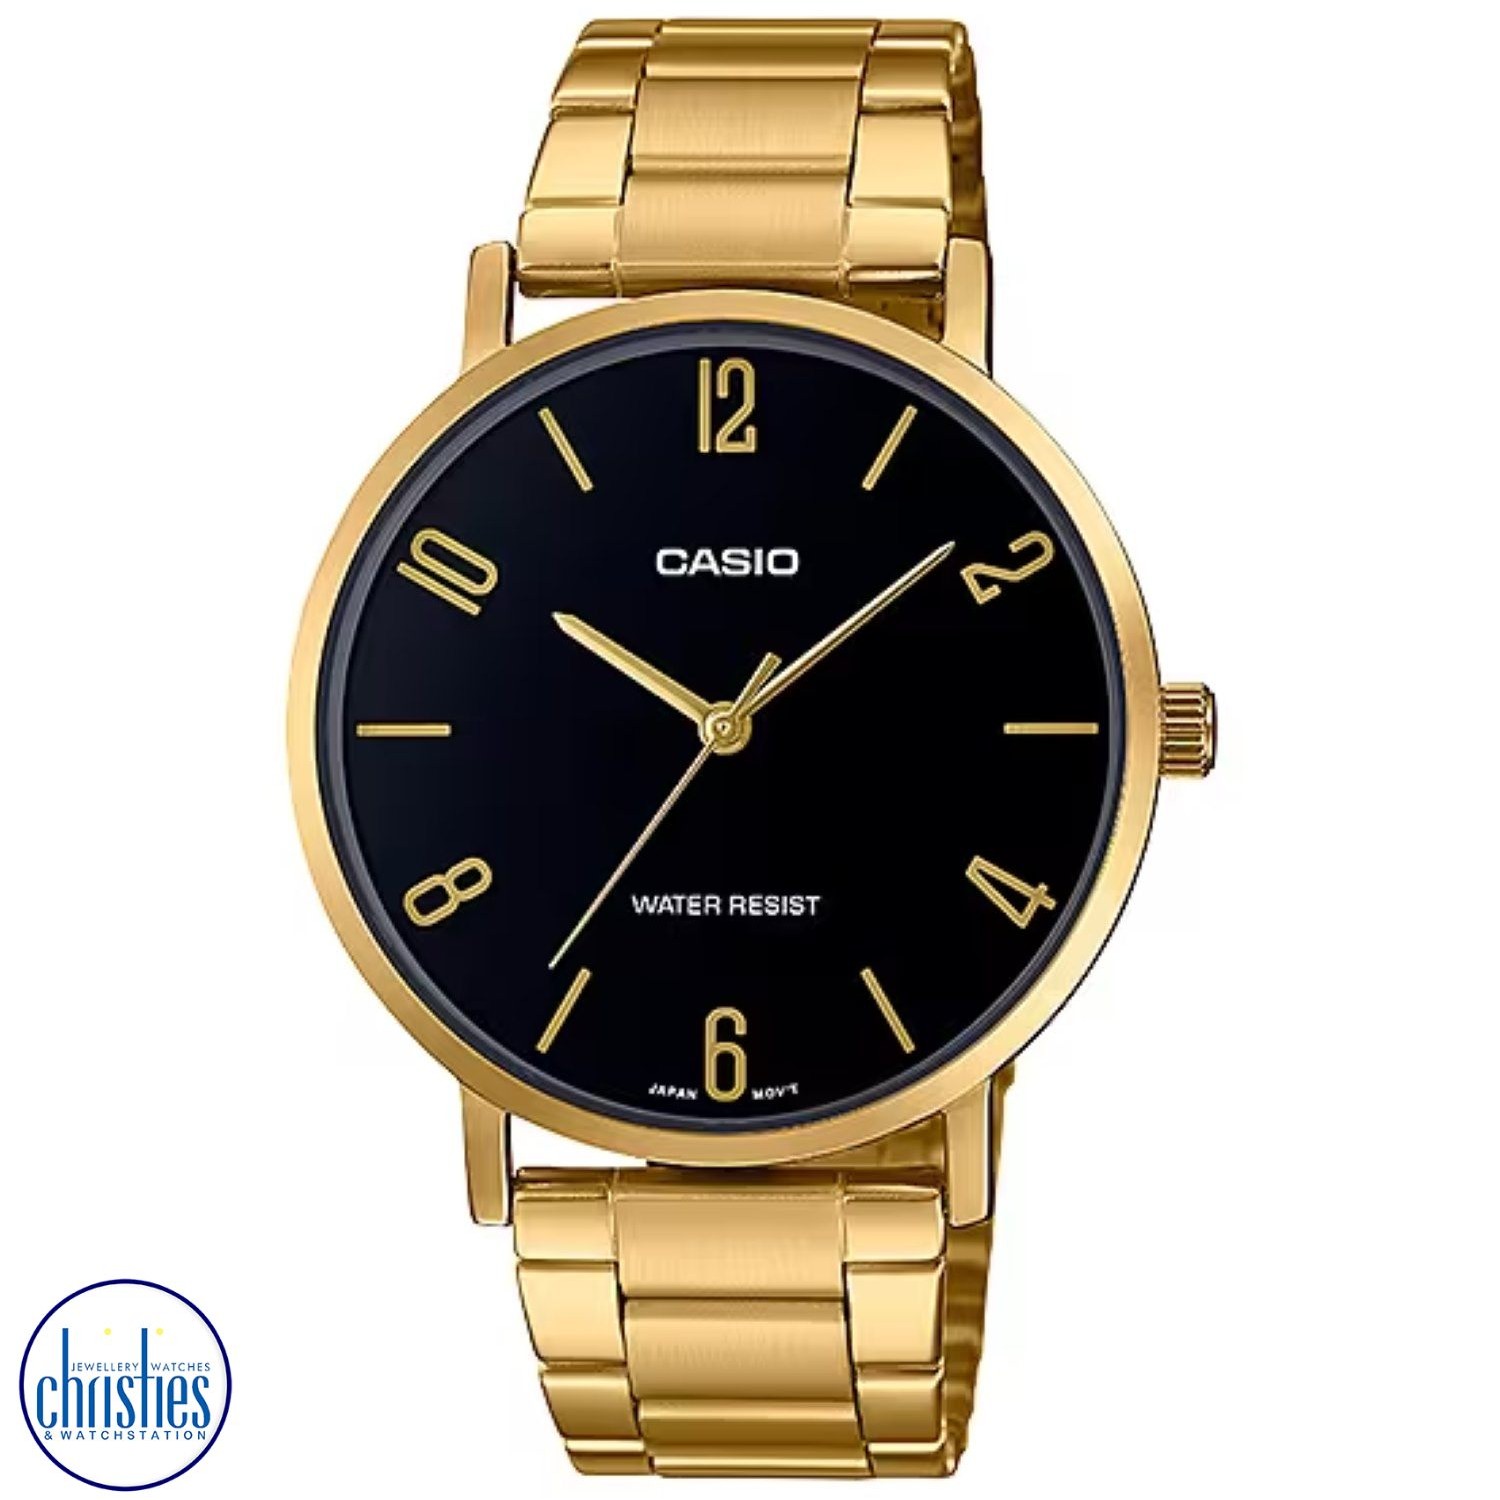 MTPVT01G-1B2 Casio Gold Black Dial Stainless Steel Watch MTPVT01G-1B2 Watches NZ